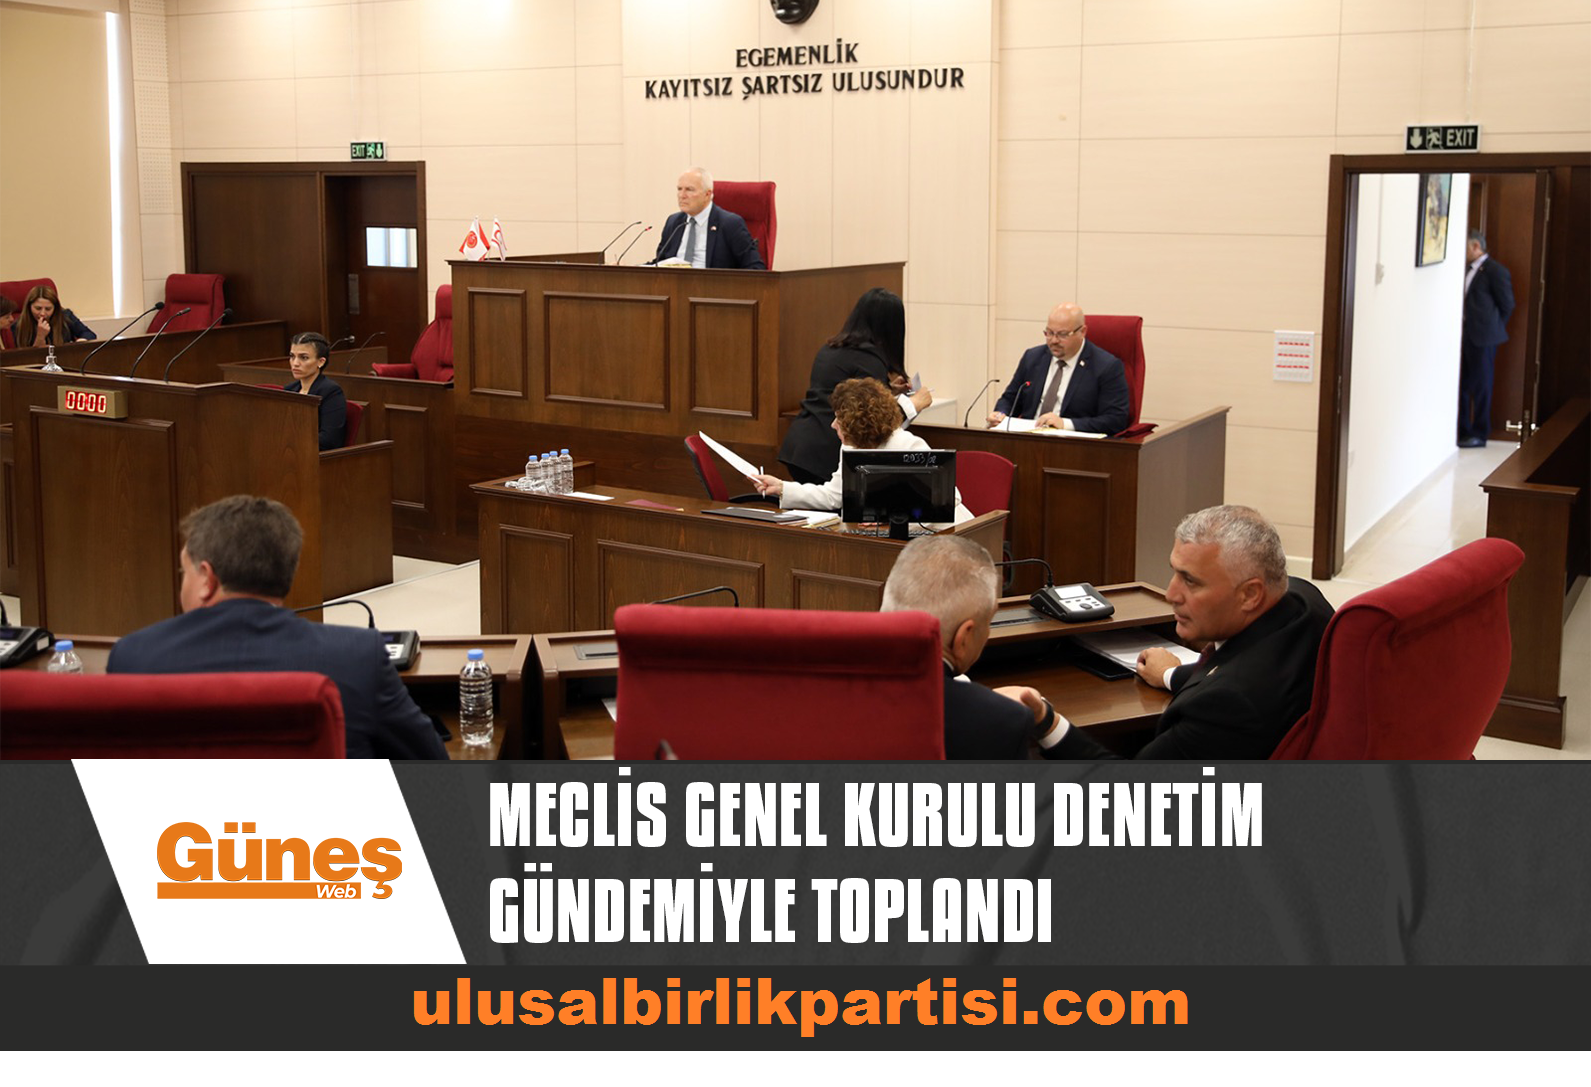 Read more about the article Meclis Genel Kurulu denetim gündemiyle toplandı